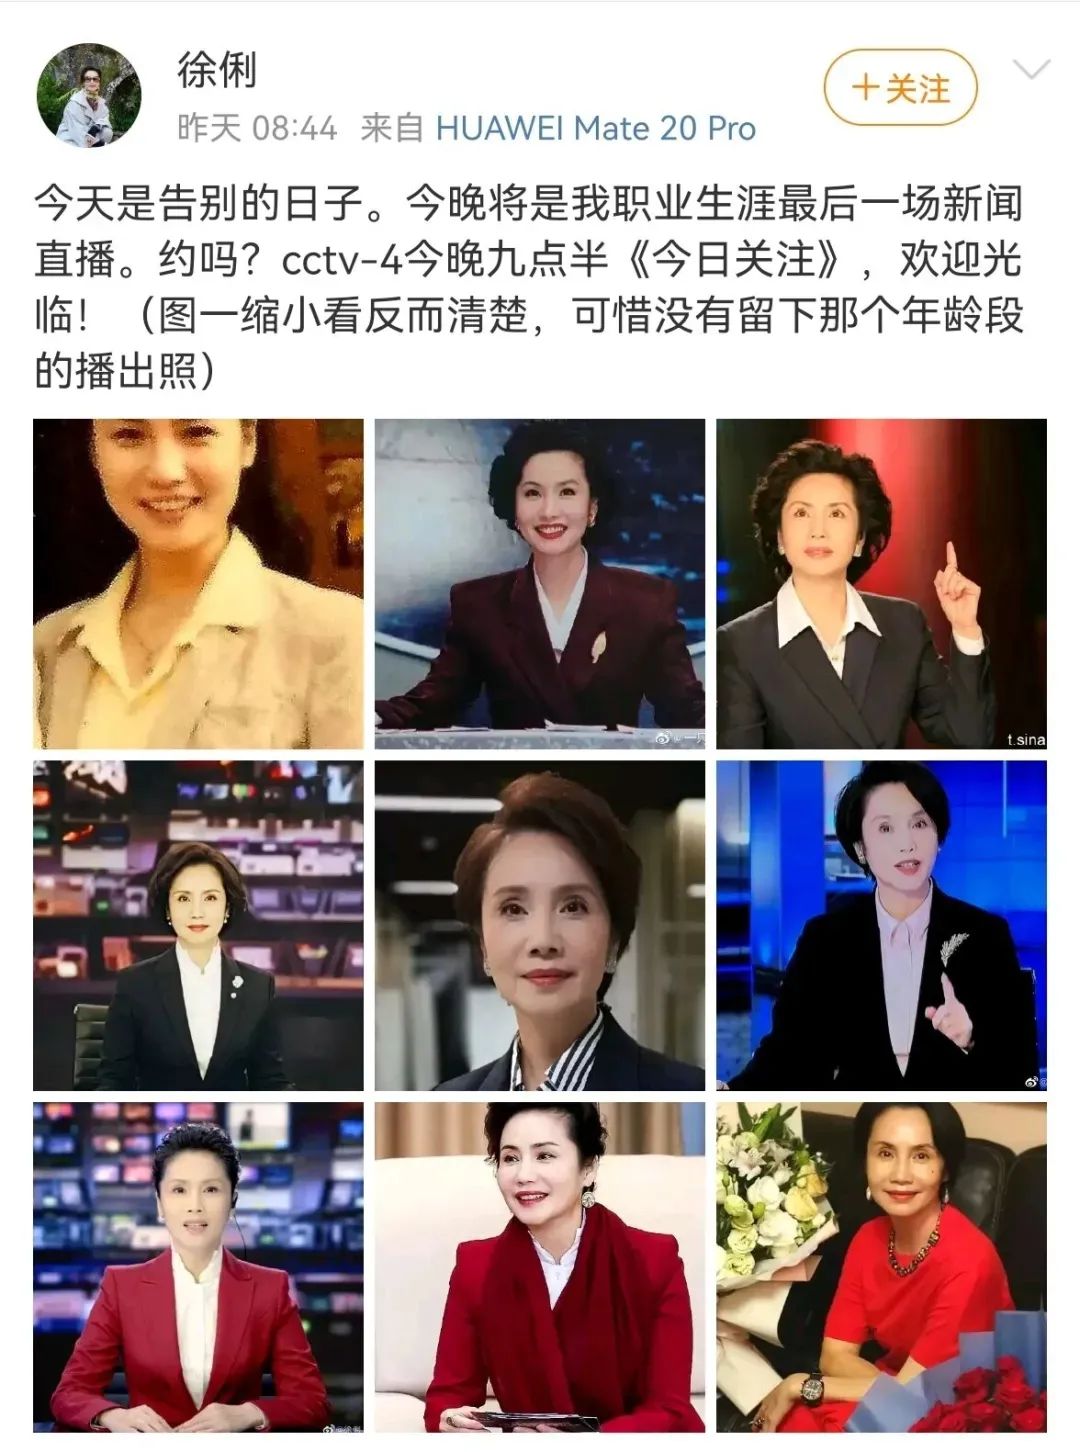 8月25日,中央电视台中文国际频道(cctv